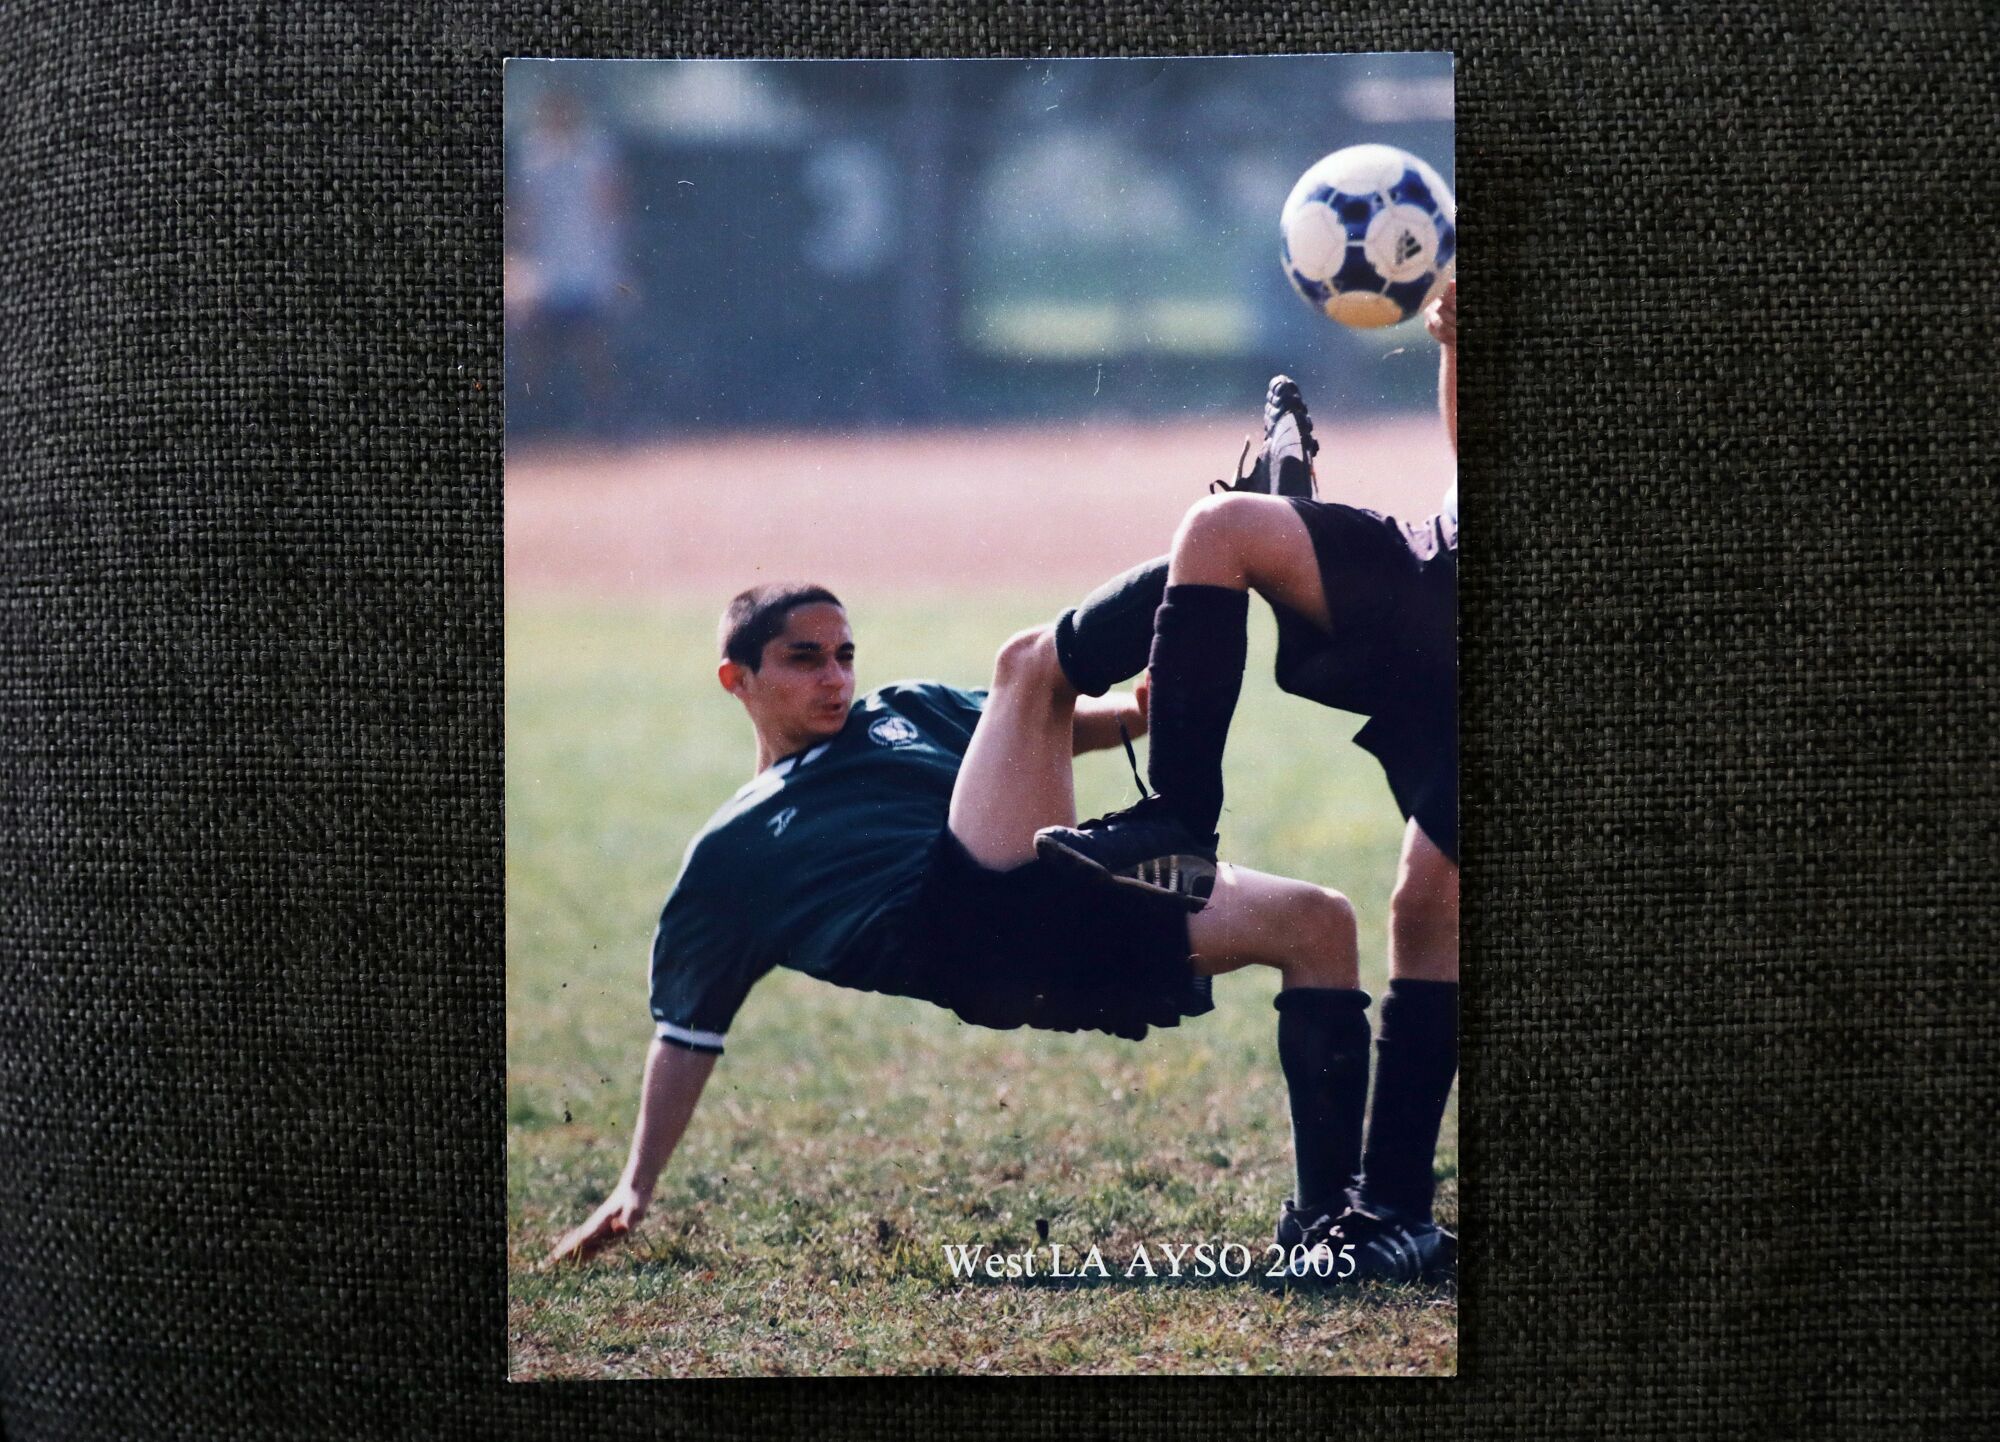 A boy kicks a soccer ball on a field